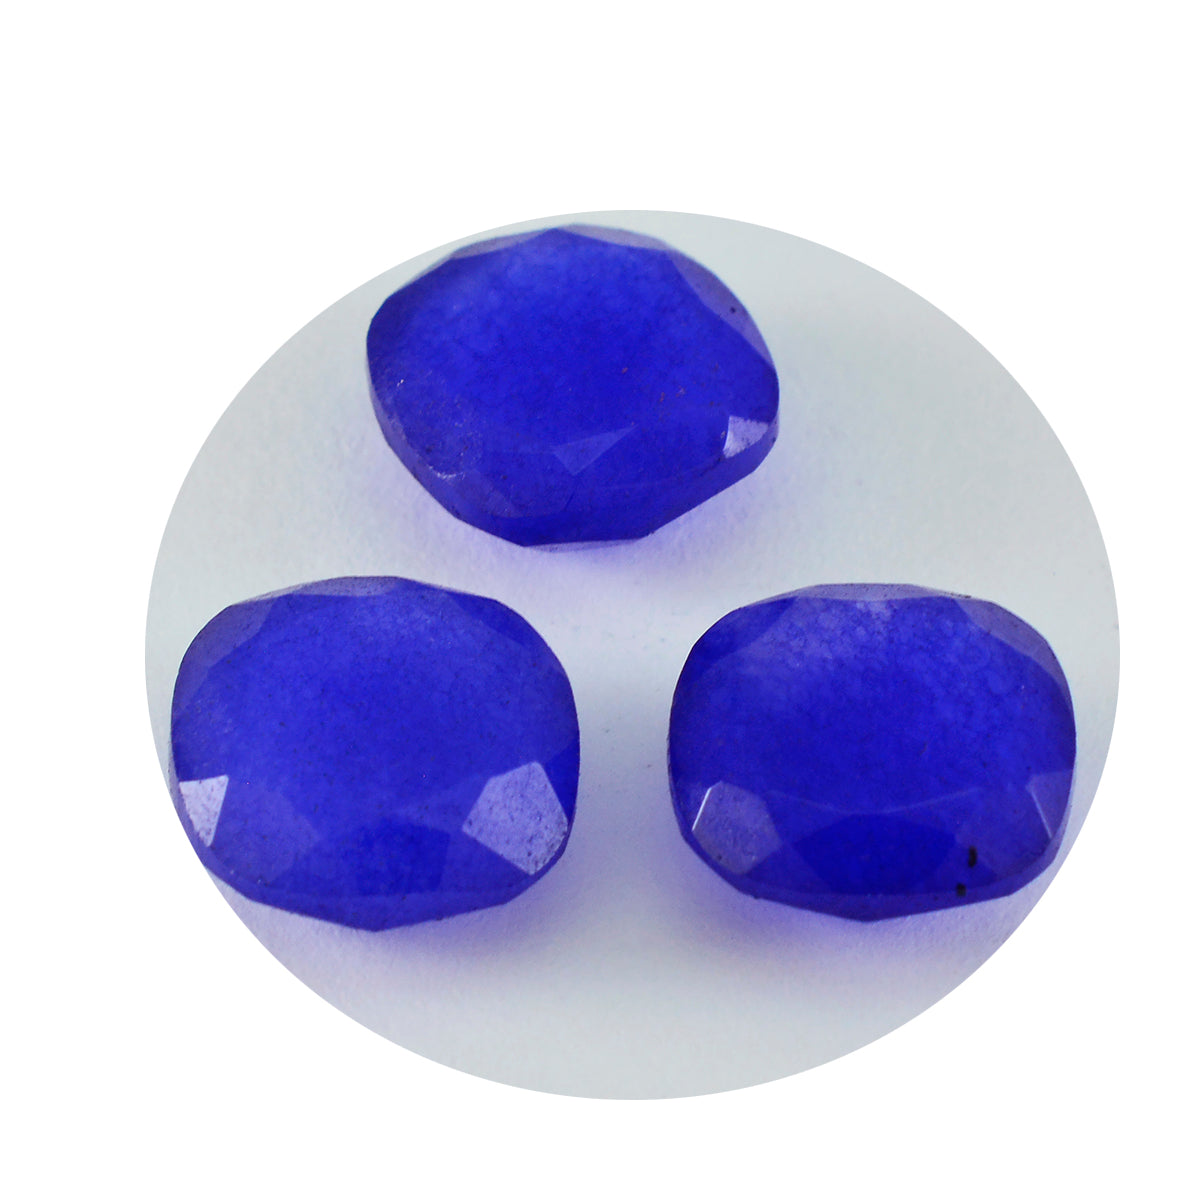 riyogems 1pc véritable jaspe bleu à facettes 11x11 mm forme coussin a1 gemme de qualité